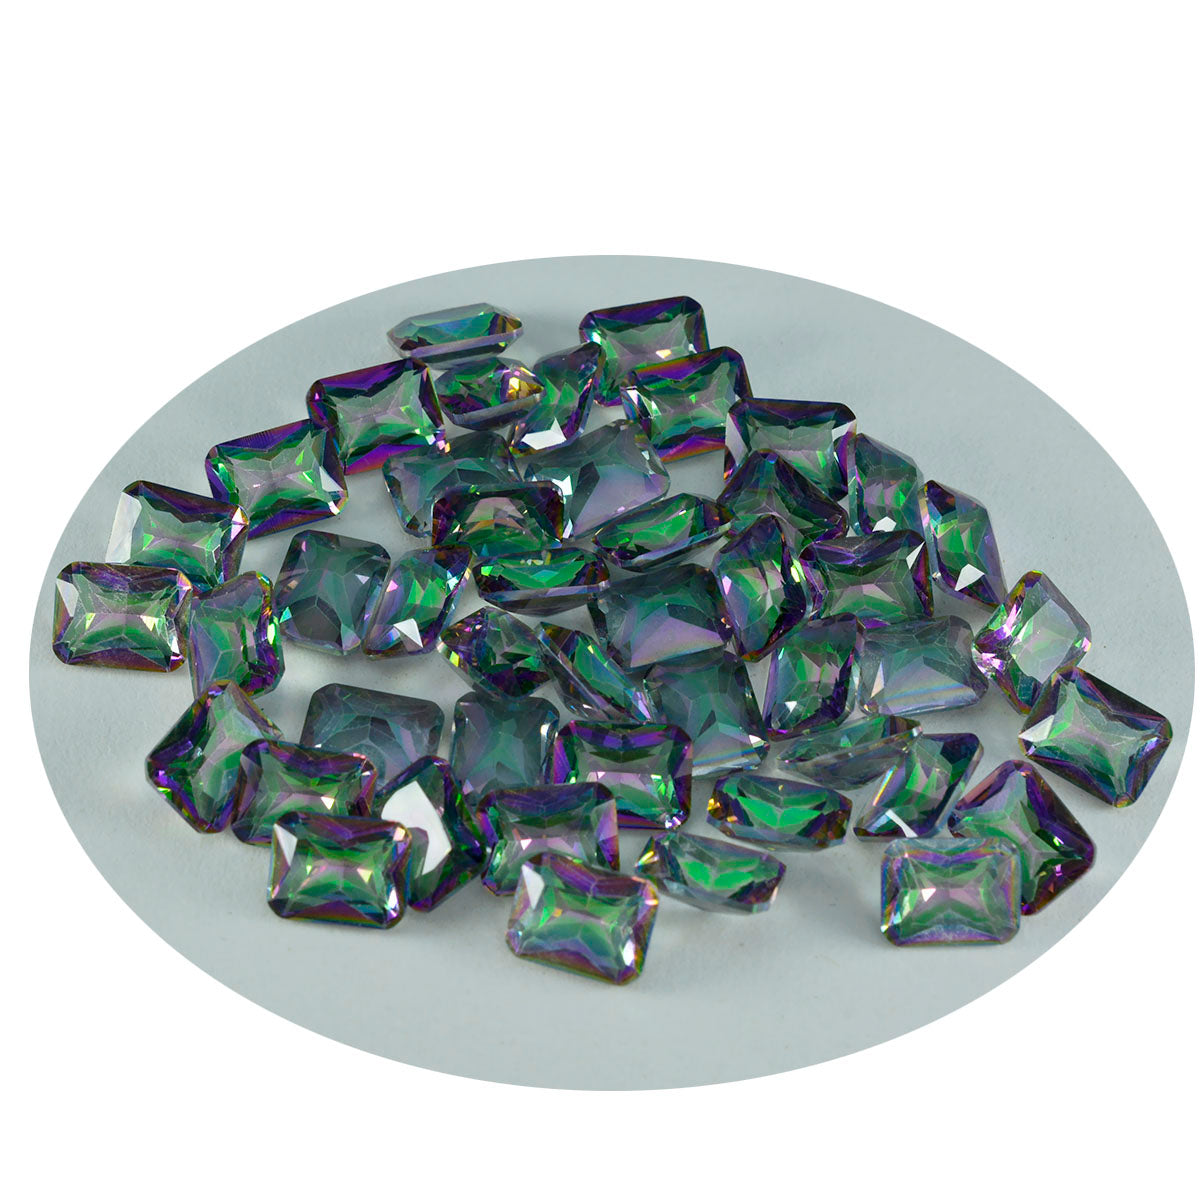 riyogems 1 шт., многоцветный мистический кварц, ограненный 4x6 мм, восьмиугольная форма, драгоценные камни отличного качества